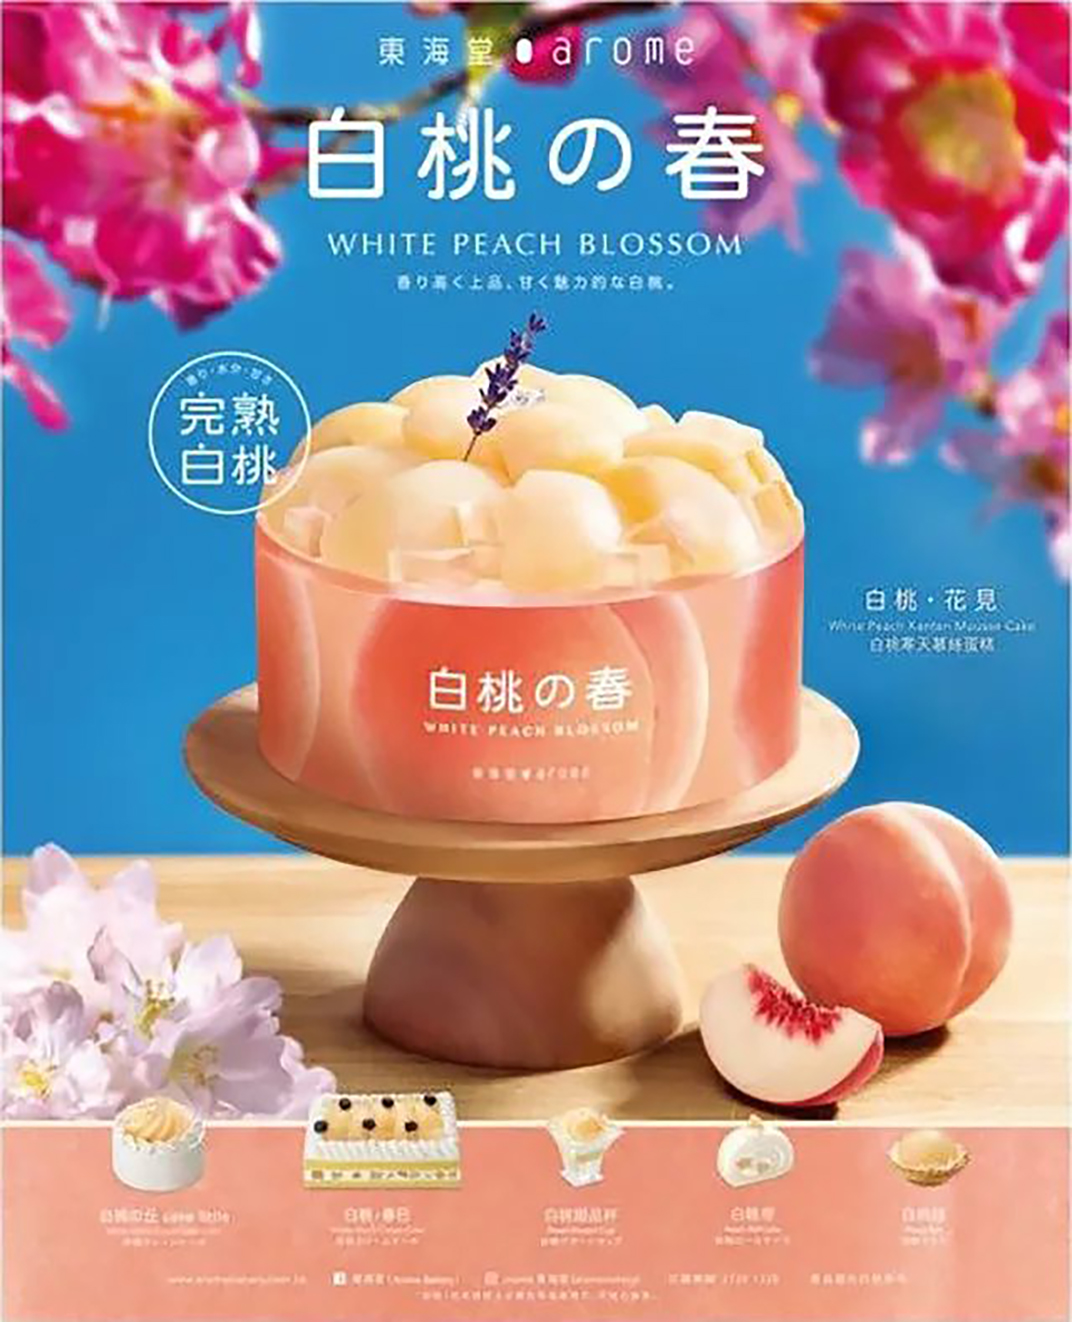 食品海报设计 日本 北京 上海 珠海 广州 武汉 杭州 佛山 香港 澳门 logo设计 vi设计 空间设计